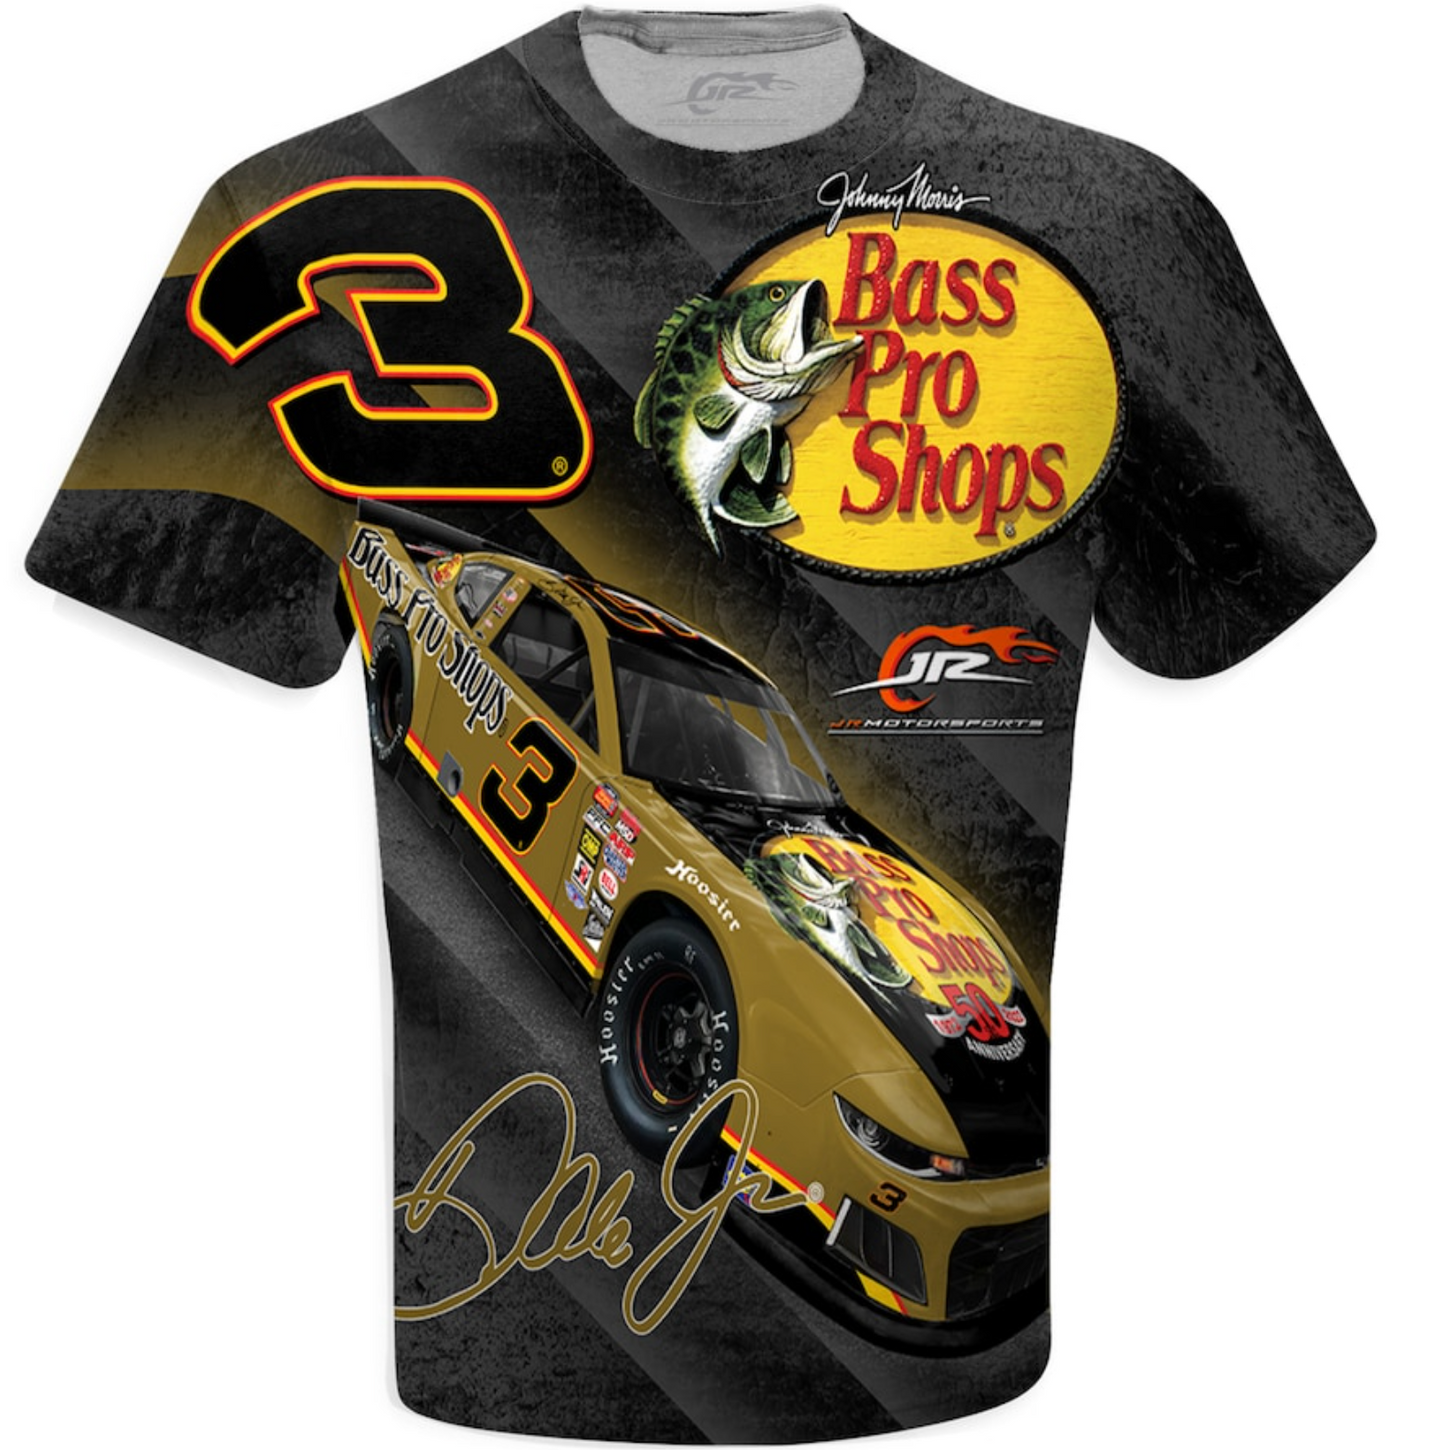 NASCAR T-Shirt Dale Earnhardt Jr. JR Motorsports Official Team Apparel Black Bass Pro Shops Total Print